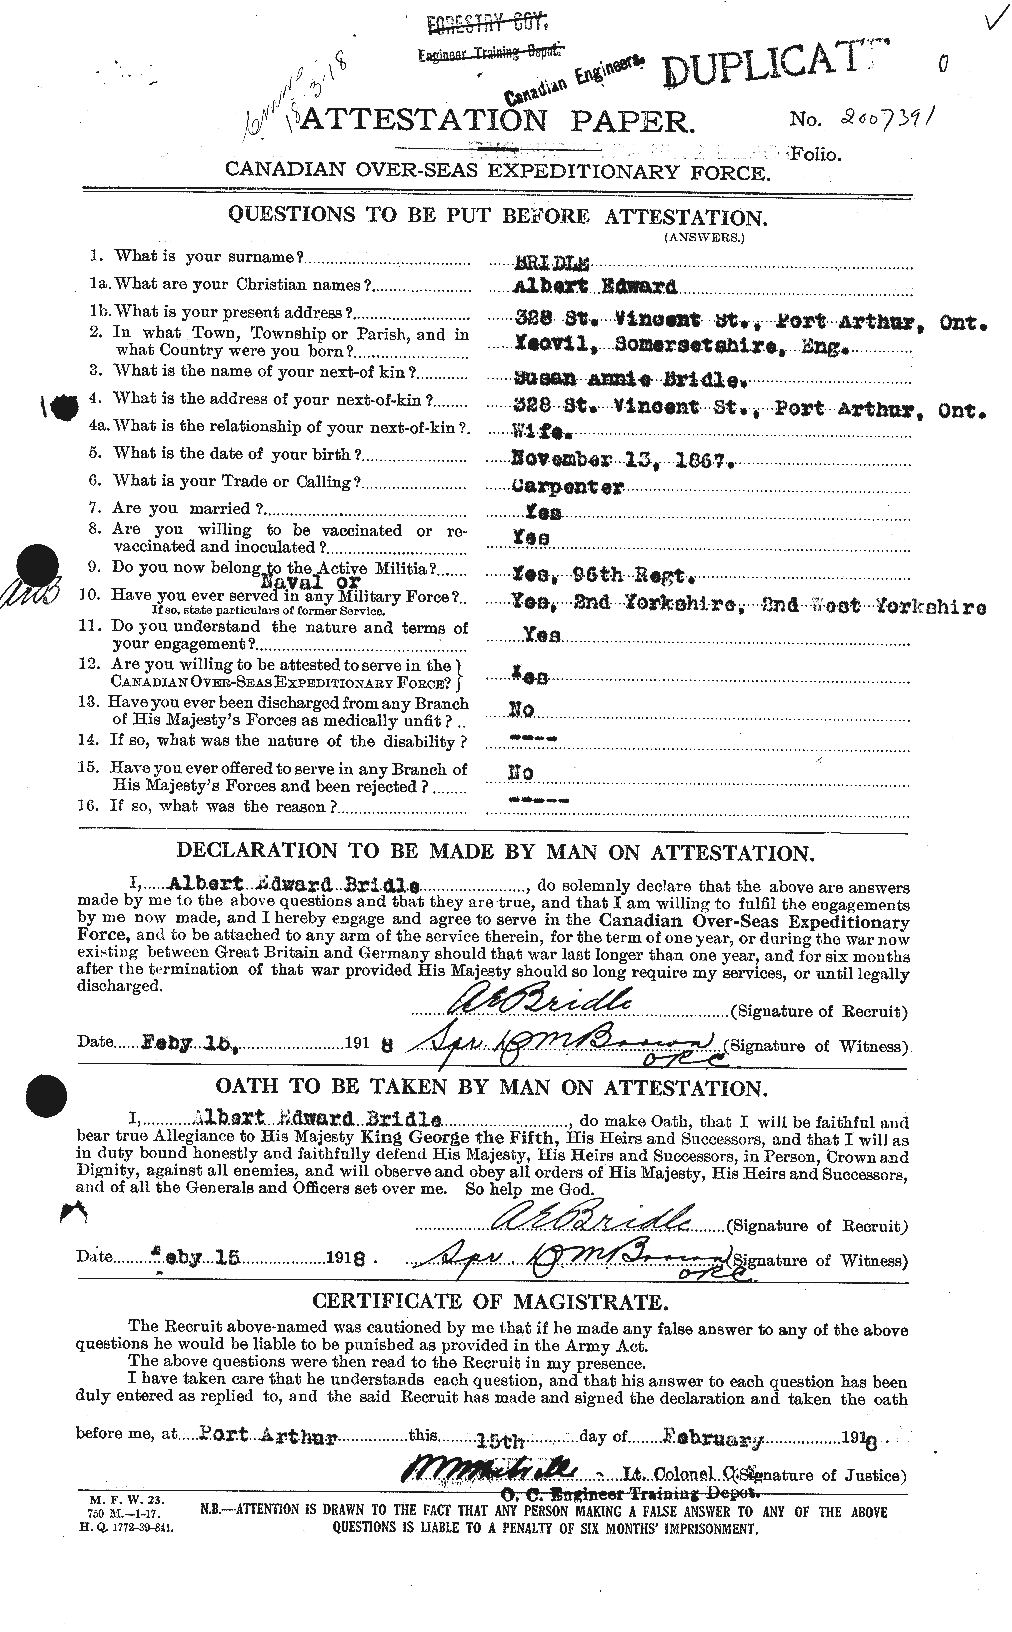 Dossiers du Personnel de la Première Guerre mondiale - CEC 259888a